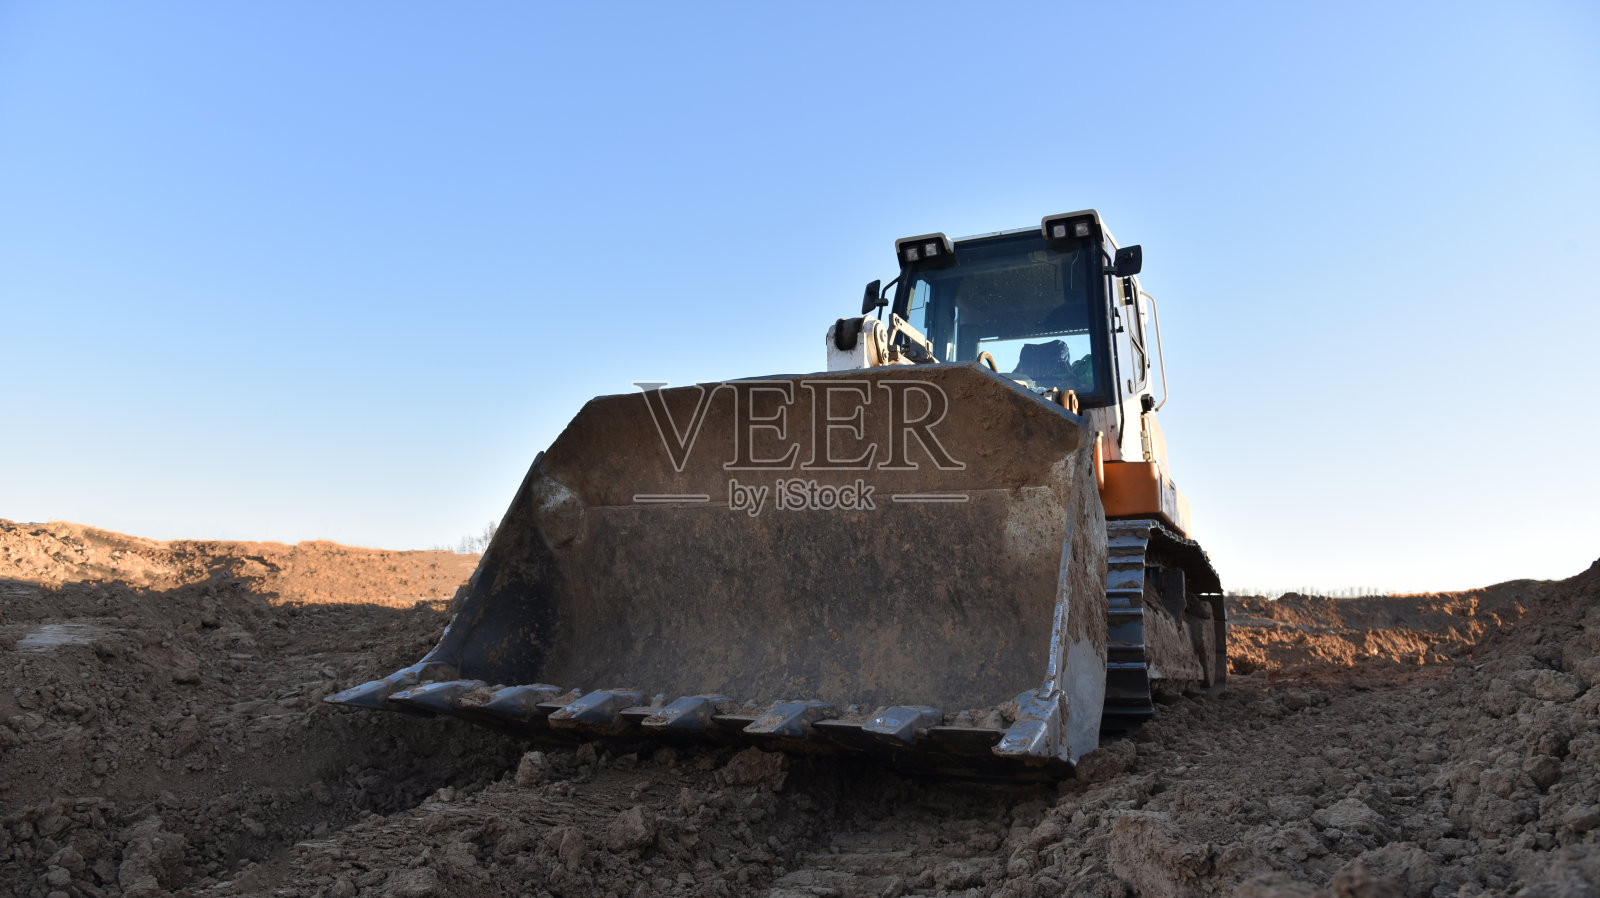 履带式装载机在工地铲土。用于清理土地、平整、挖池、公用事业挖沟和挖掘基础的土方设备。采石场的履带式装载机或推土机照片摄影图片